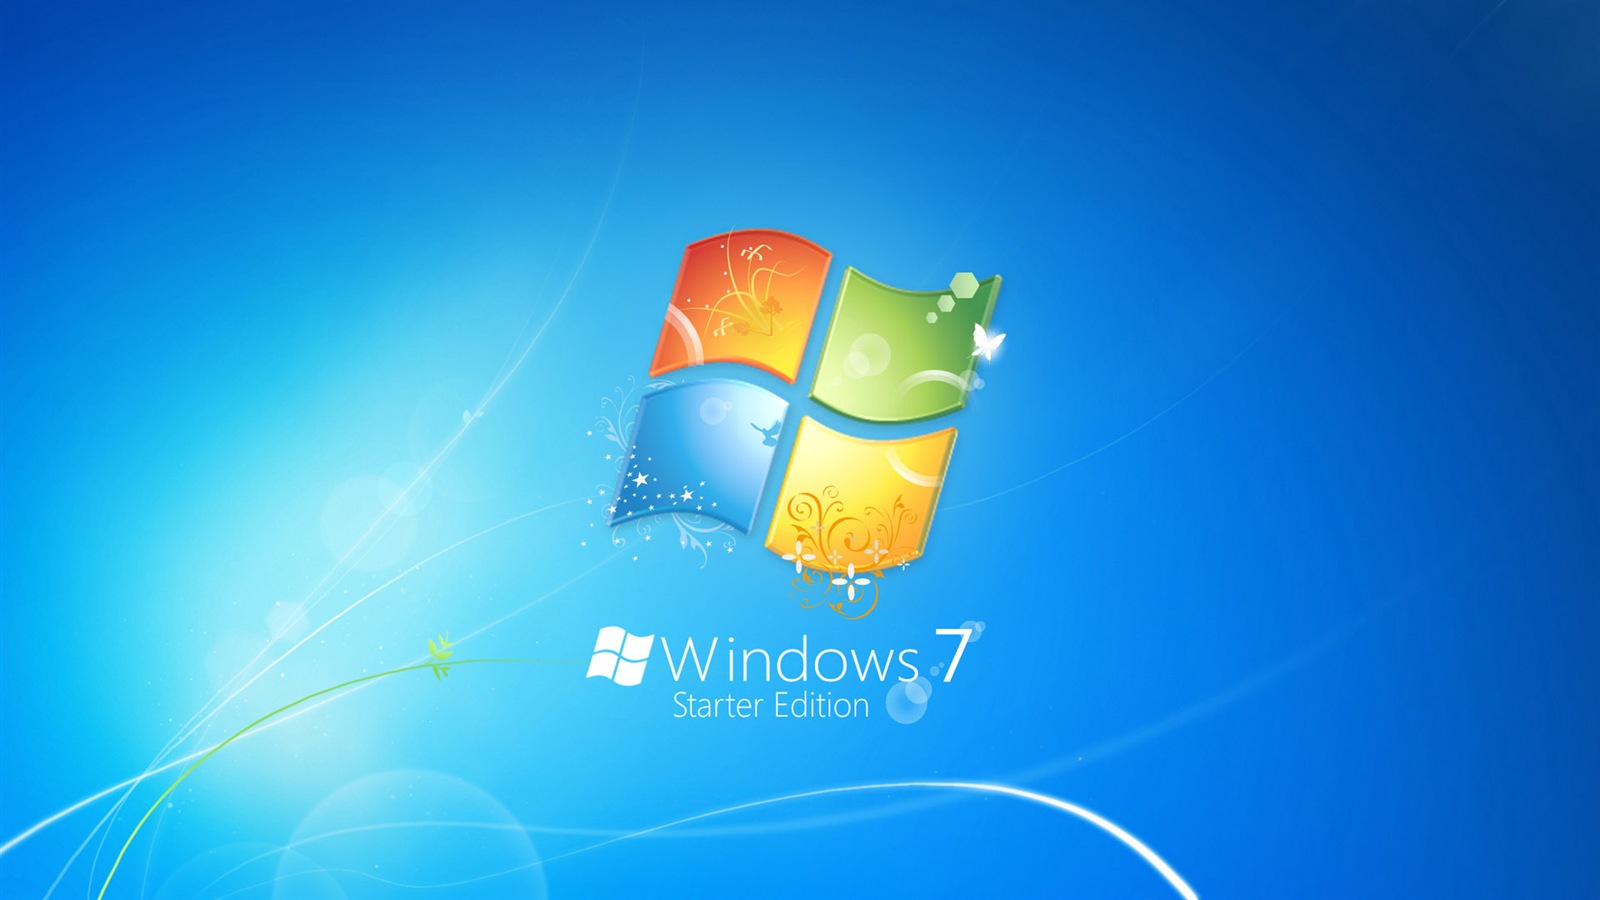 Windows 7 – phiên bản hệ điều hành được yêu thích của Microsoft. Nếu bạn là một fan của Windows 7, hình nền logo của Windows 7 chắc chắn sẽ khiến bạn cảm thấy thích thú. Tại đây, bạn sẽ tìm thấy những hình nền đẹp và tinh tế, dành cho những người yêu thích Windows 